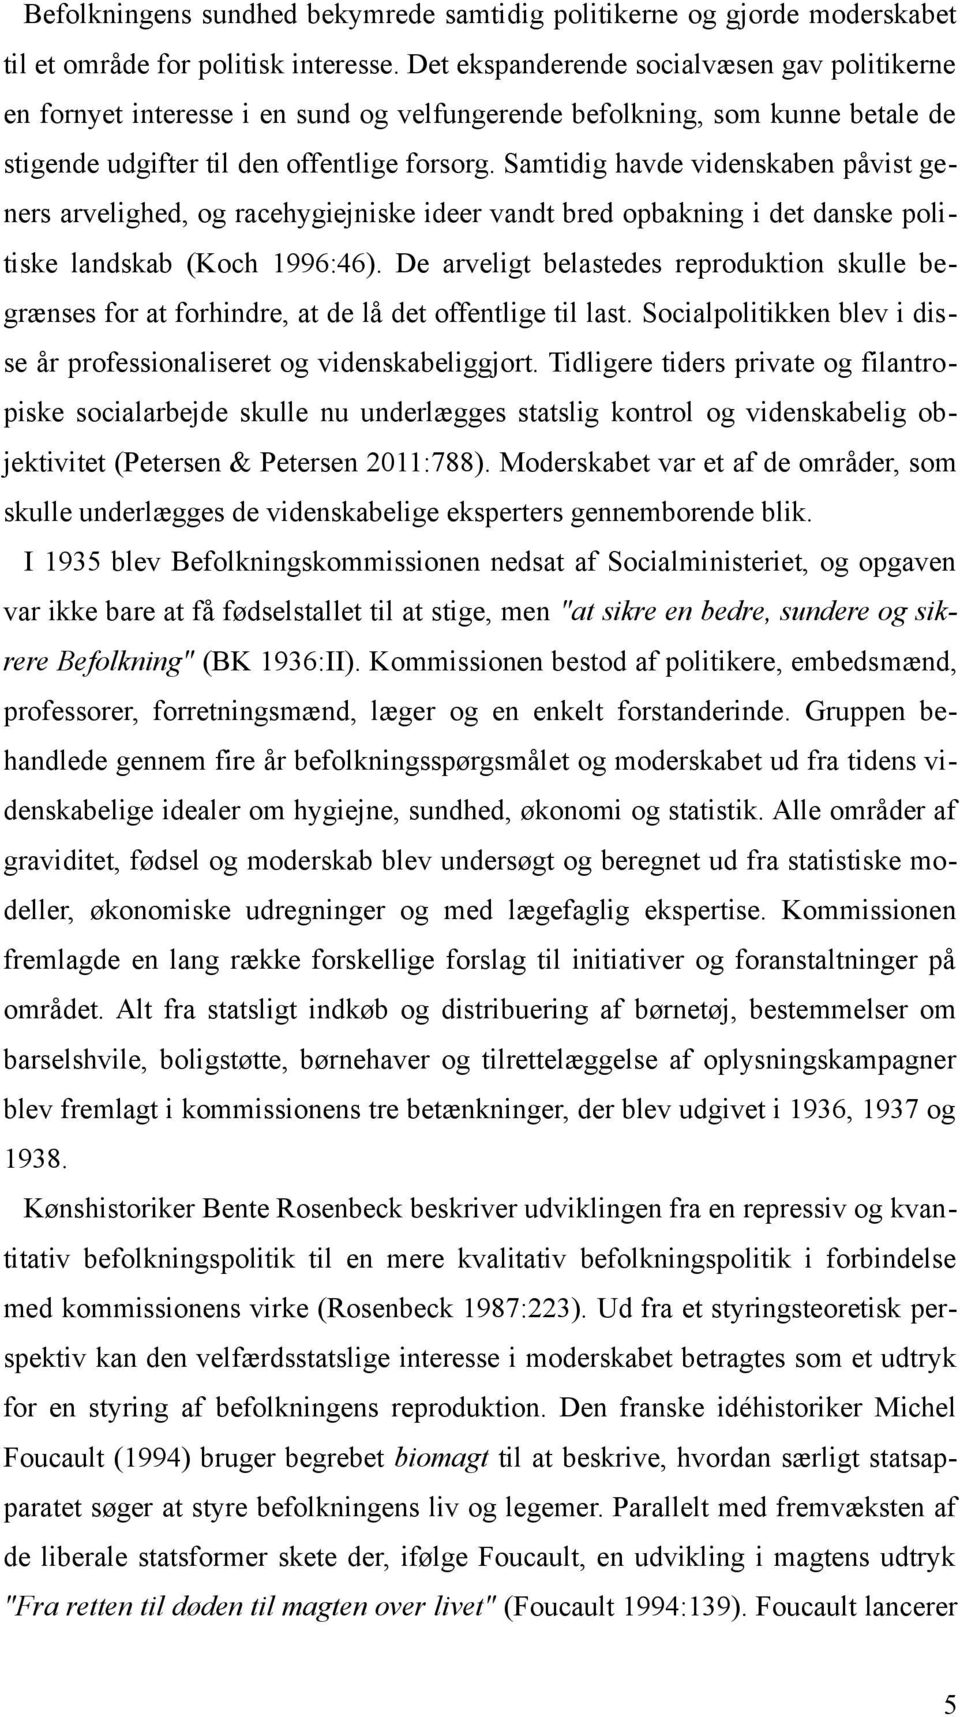 Samtidig havde videnskaben påvist geners arvelighed, og racehygiejniske ideer vandt bred opbakning i det danske politiske landskab (Koch 1996:46).